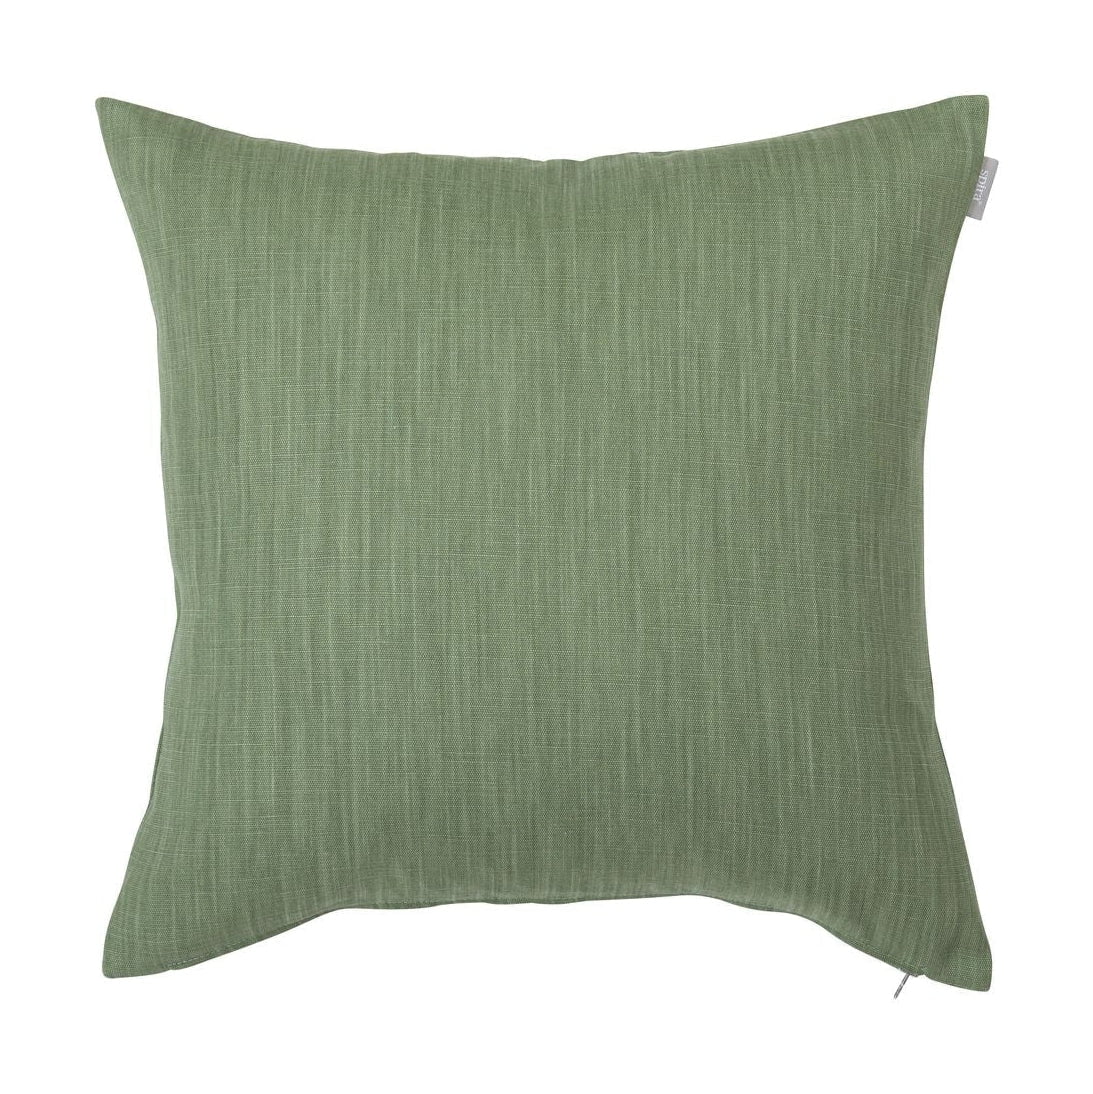 Spira Släte 50 I Klotz Cushion Cover, Sage Green